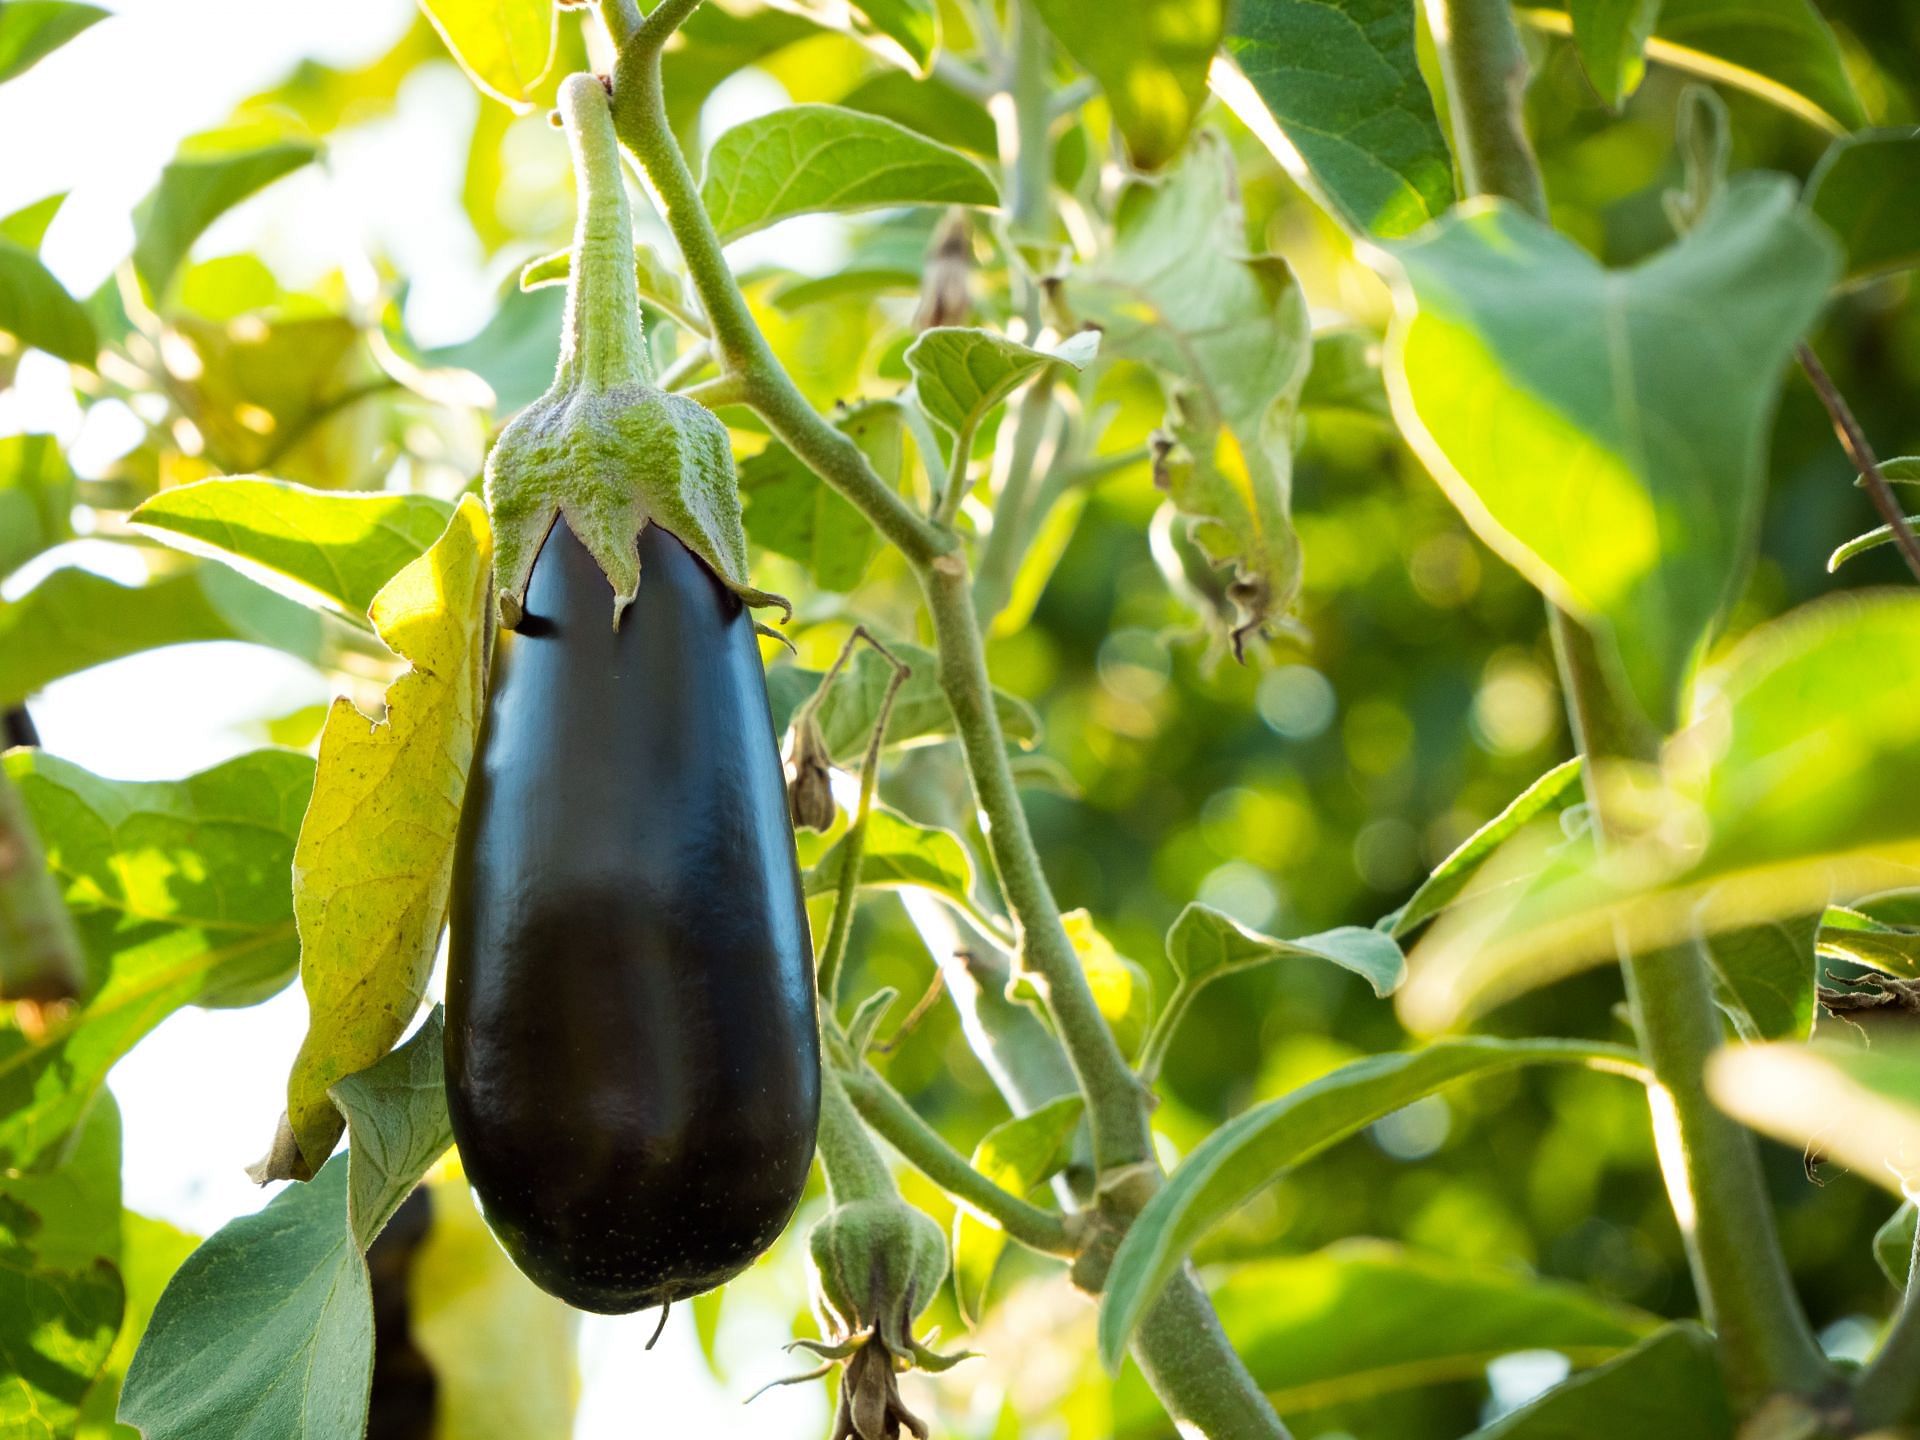 Eggplants are nutrient-dense vegetables. (Image via Unsplash / Dan Cristian Padure)